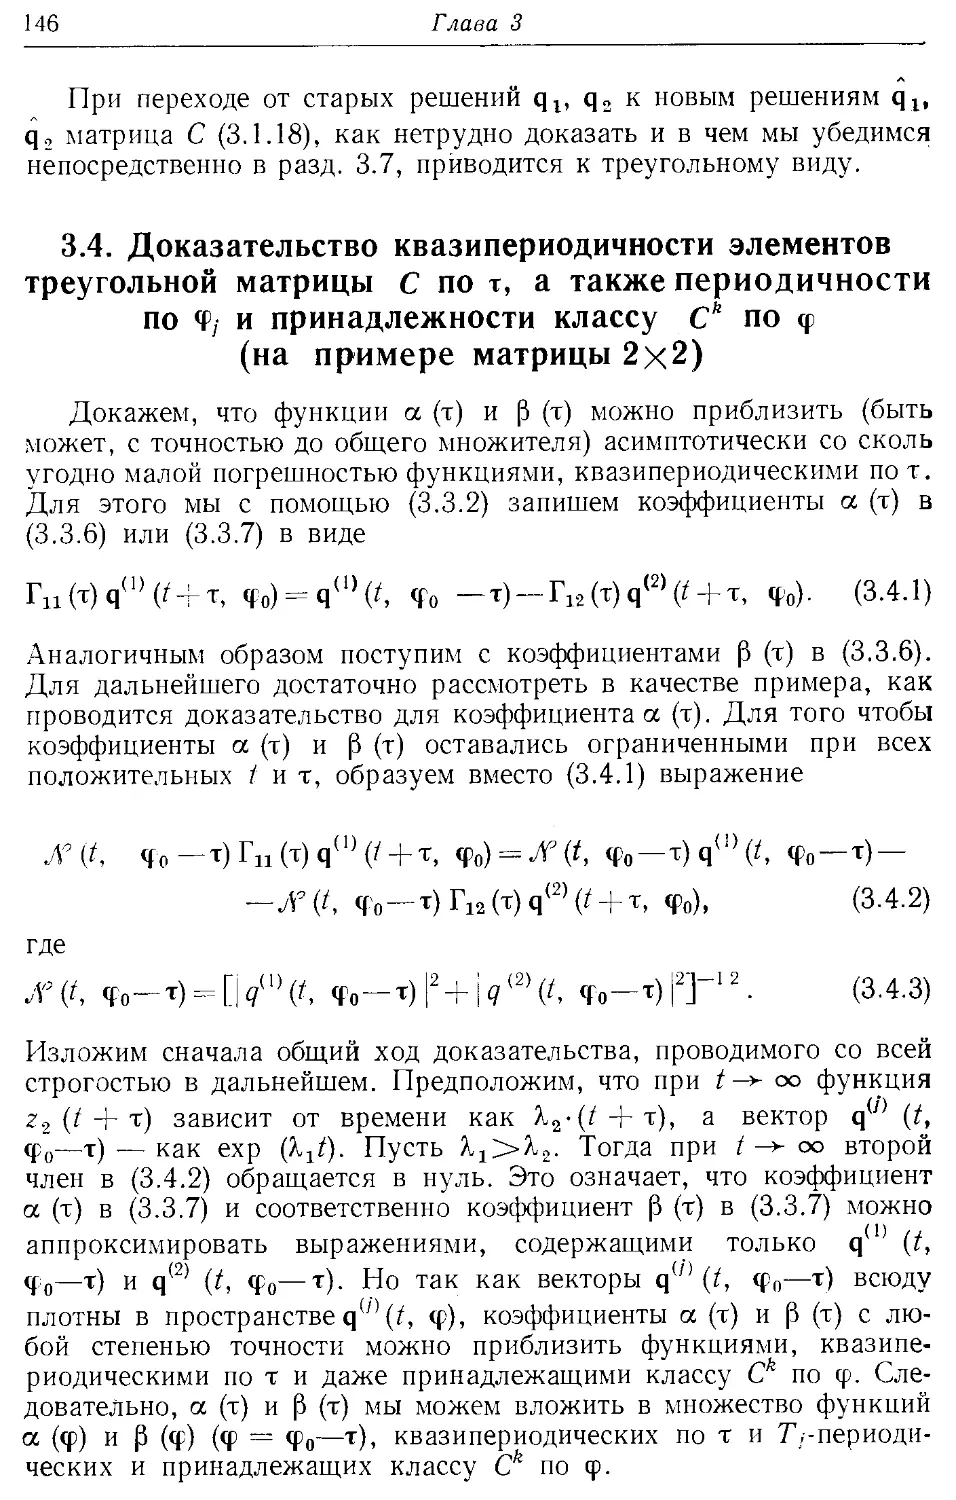 3.4. Доказательство квазипериодичности элементов треугольной матрицы